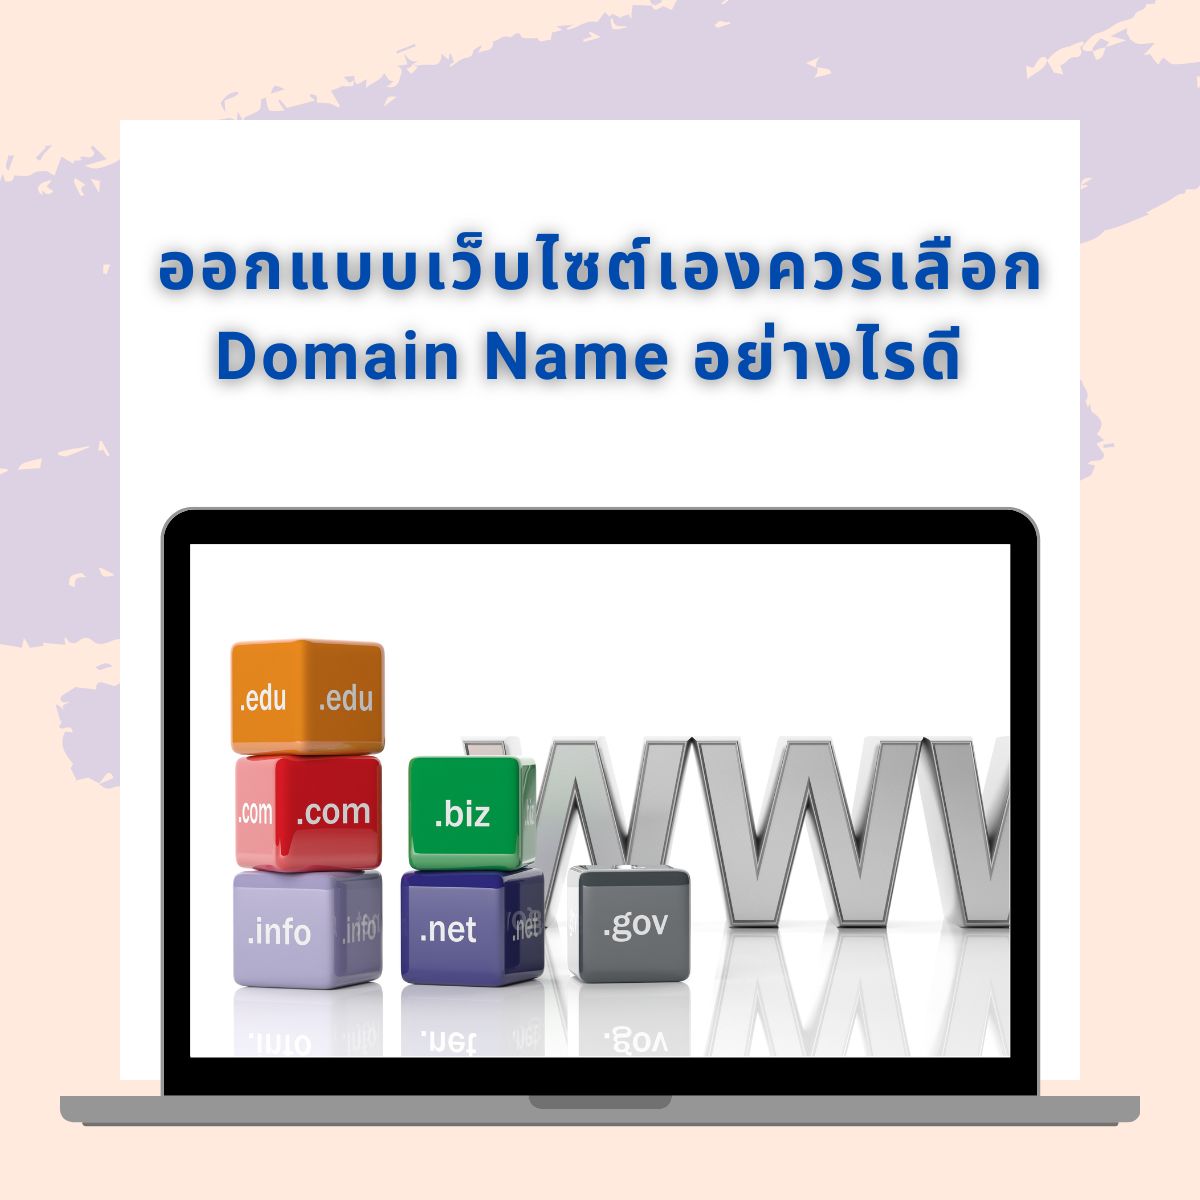 ออกแบบเว็บไซต์เองควรเลือก Domain Name อย่างไรดี